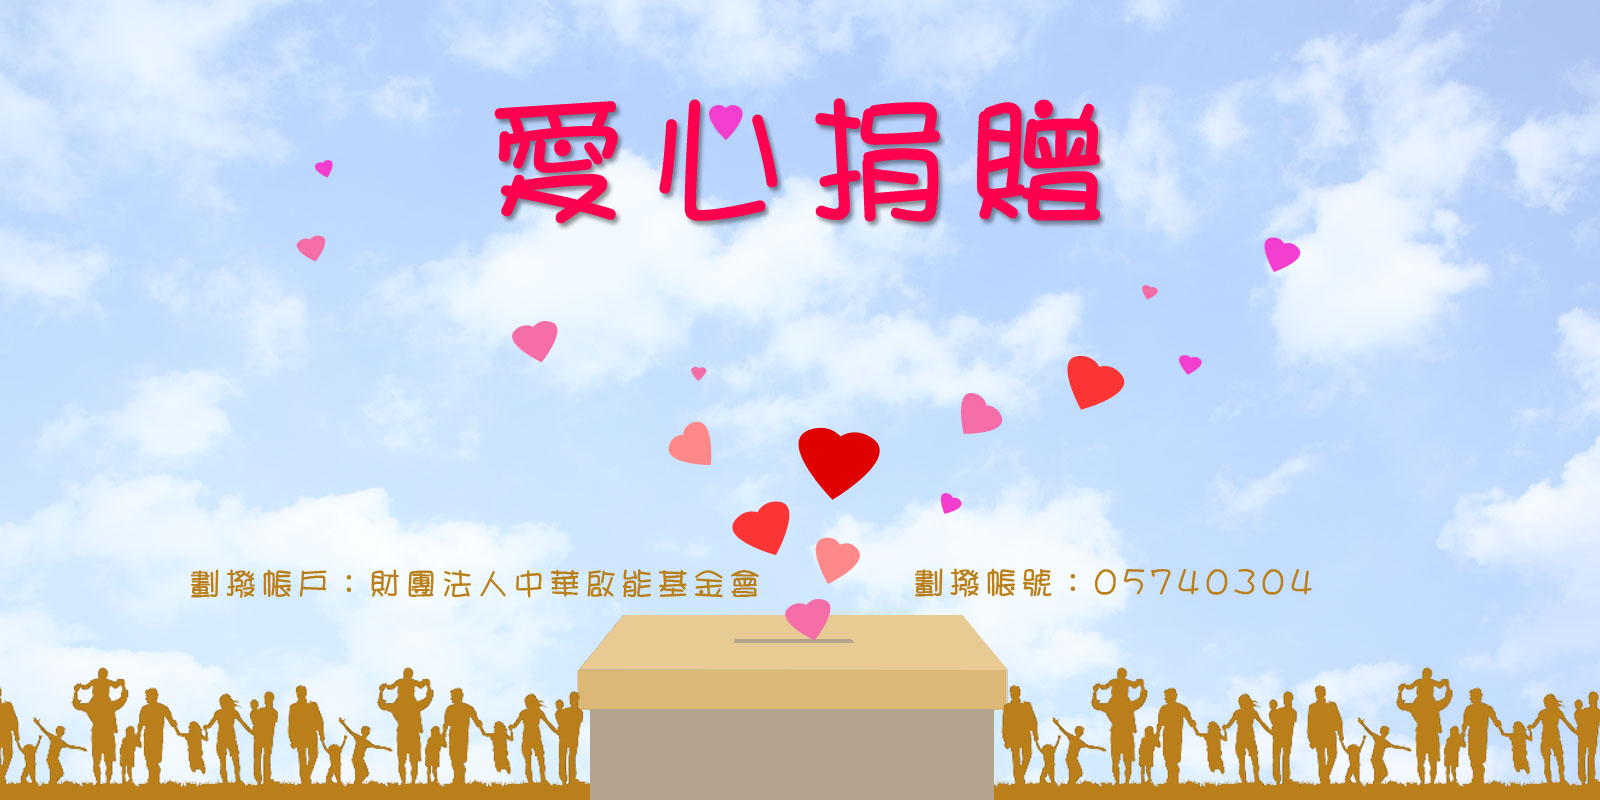 財團法人中華啟能基金會附設春暉啟能中心-愛心捐贈 小小的愛心 大大的溫暖